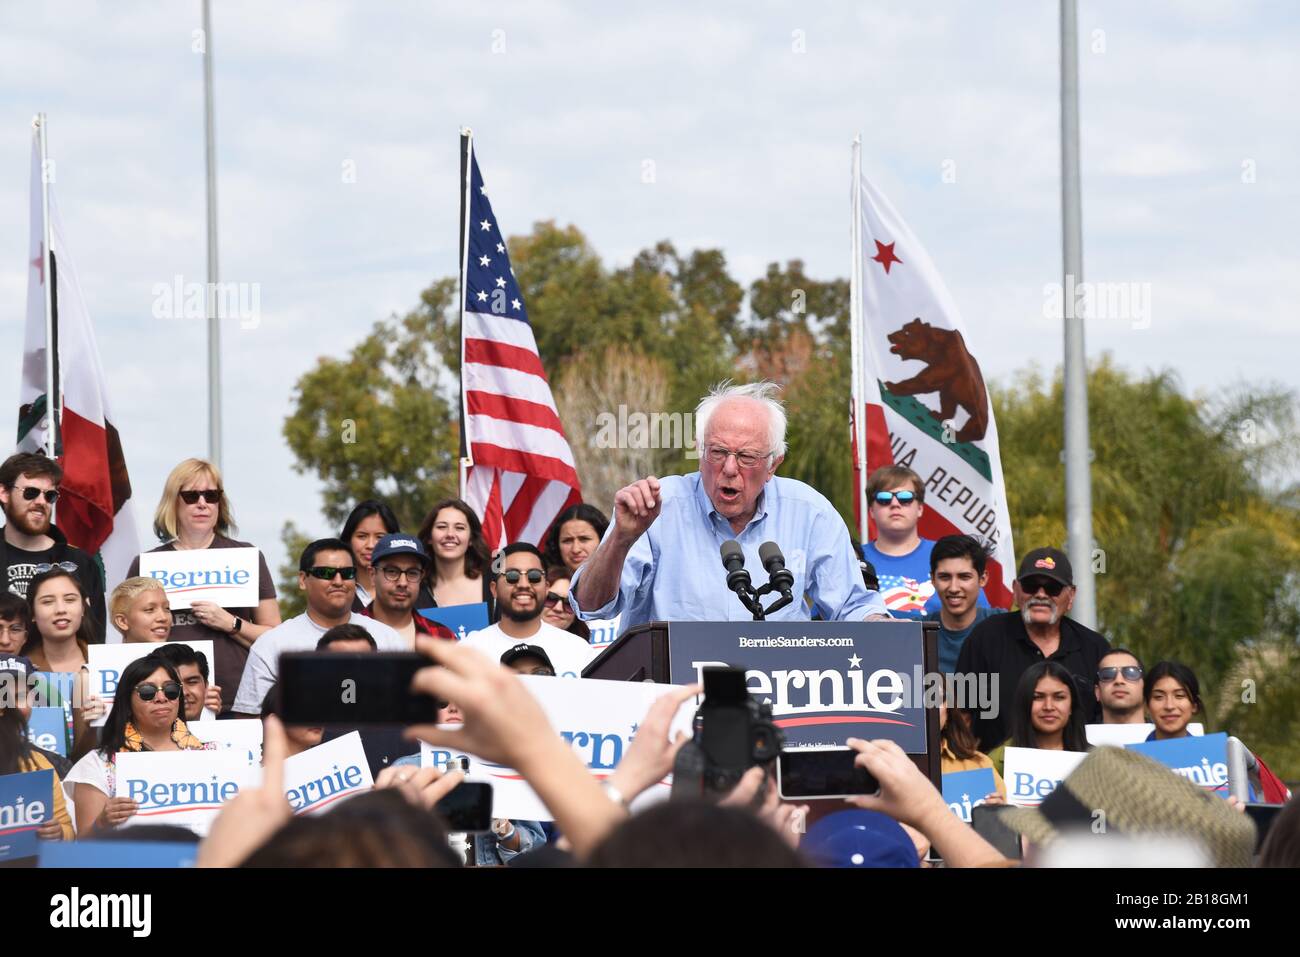 Santa ANA, KALIFORNIEN - 21. FEBRUAR 2020: Bernie Sanders spricht bei einer Kundgebung im Freien in Santa Ana mit den Anhängern. Stockfoto